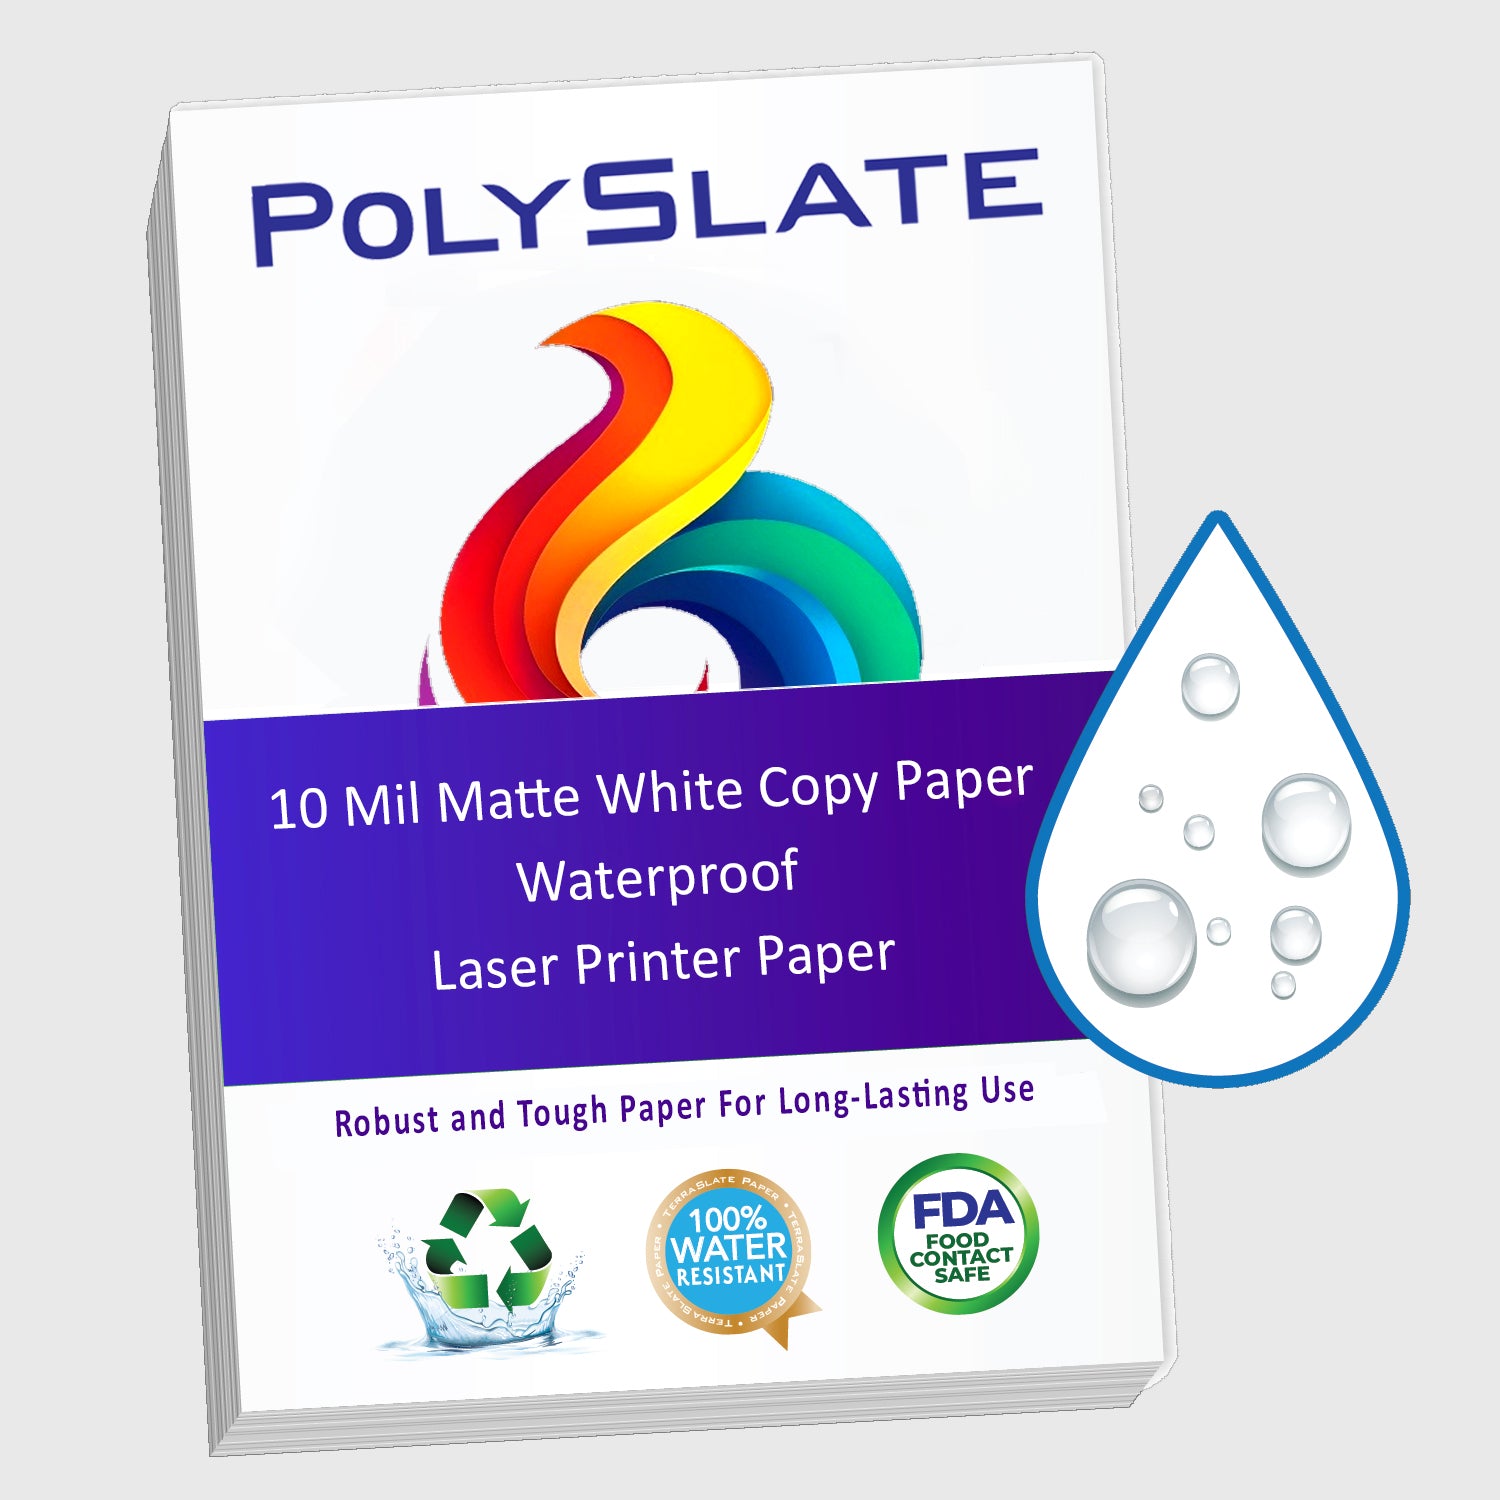 PolySlate Value Waterproof Paper & Menus